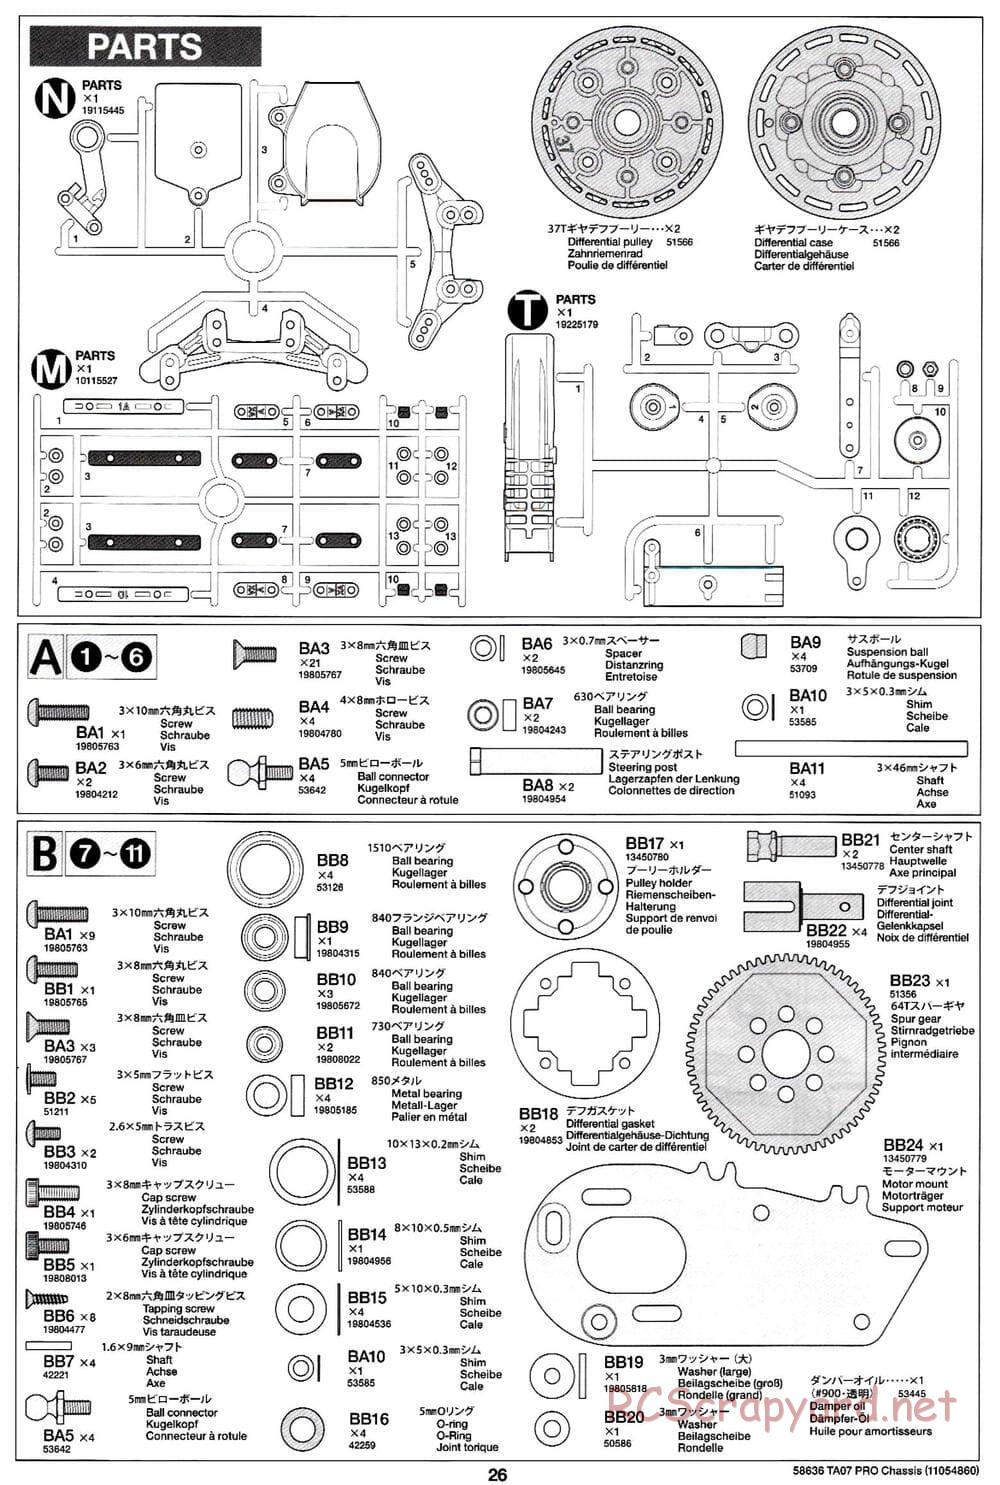 Tamiya - TA07 Pro Chassis - Manual - Page 26